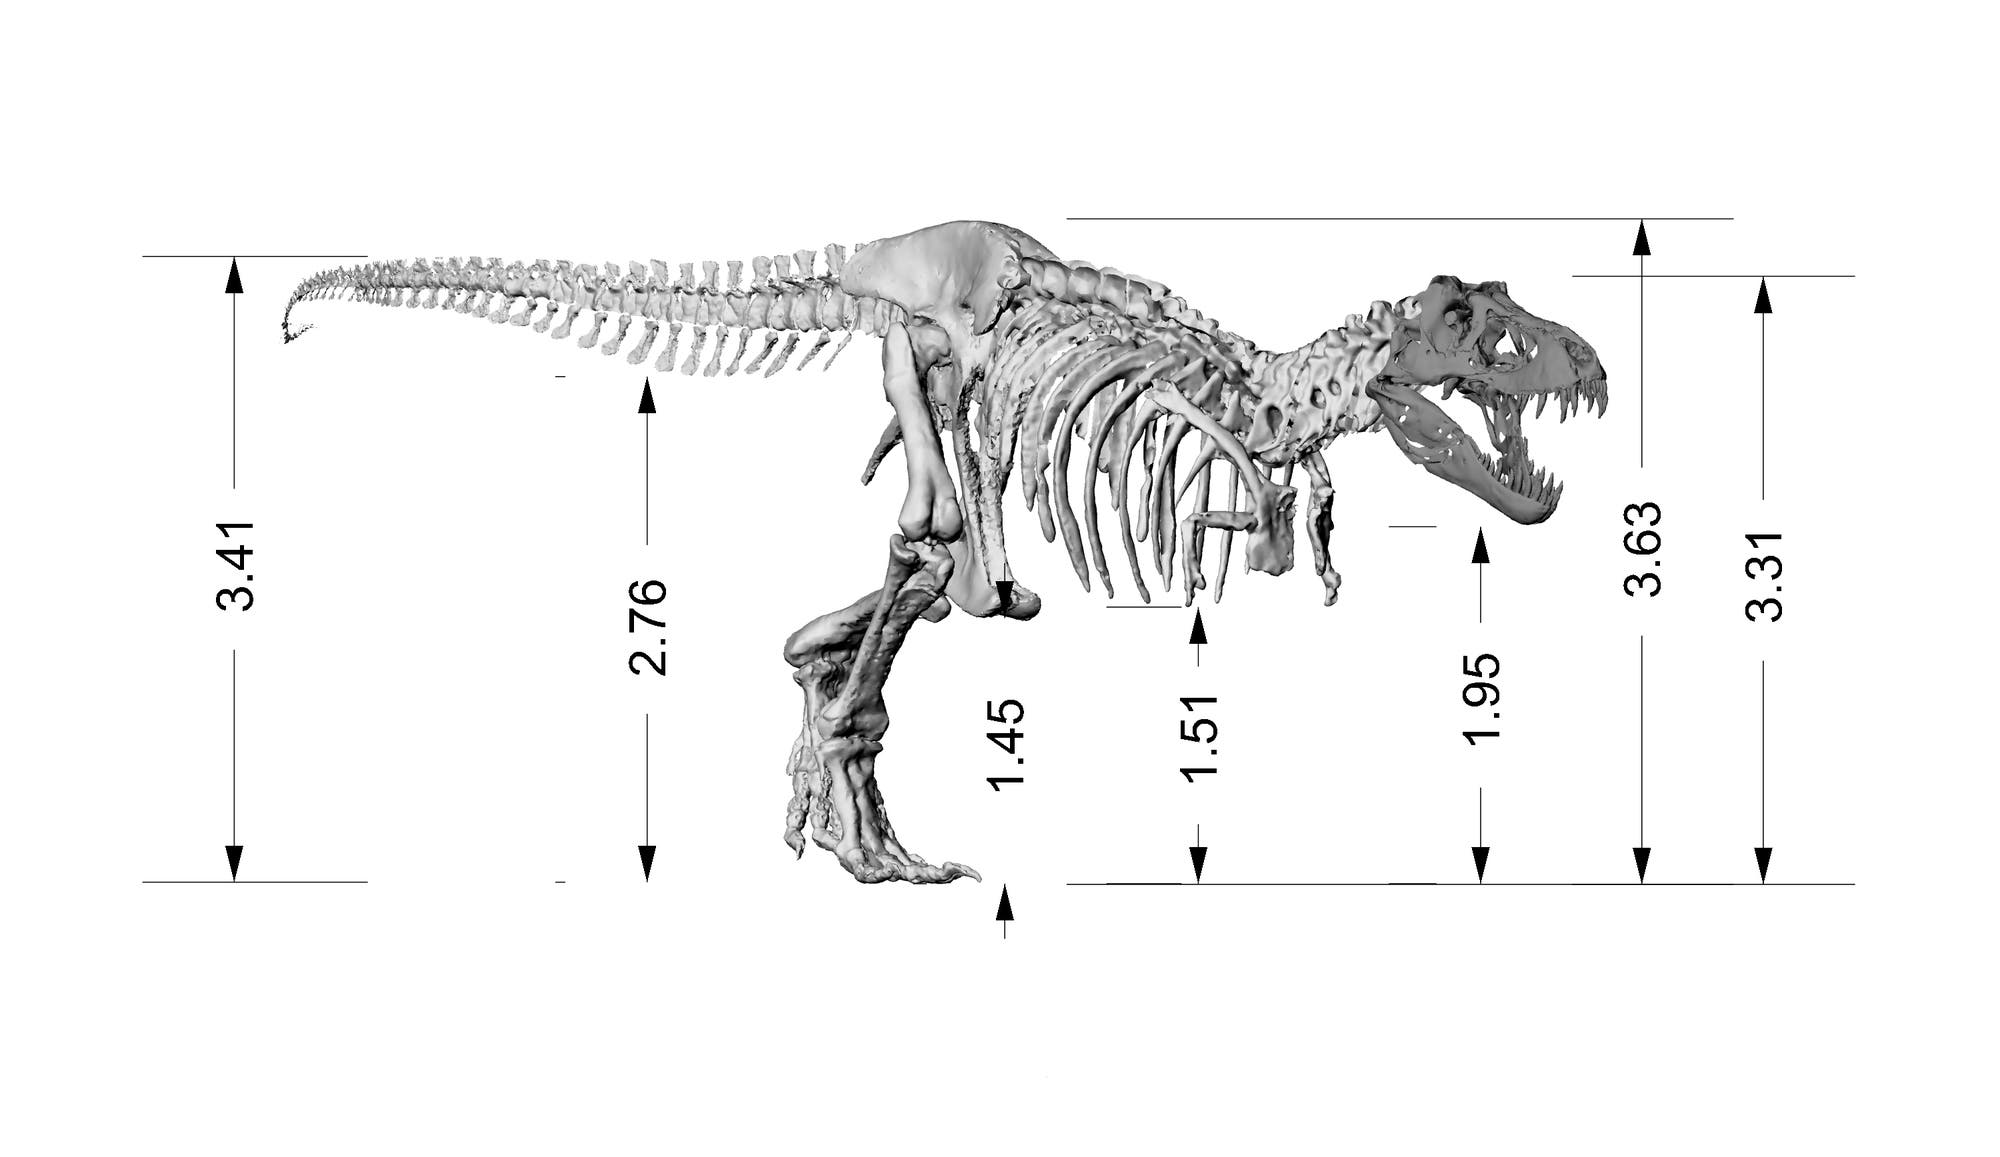 Das sind die Dimensionen von Tristan und sein aus 3D-Daten zusammengefügtes Skelett.